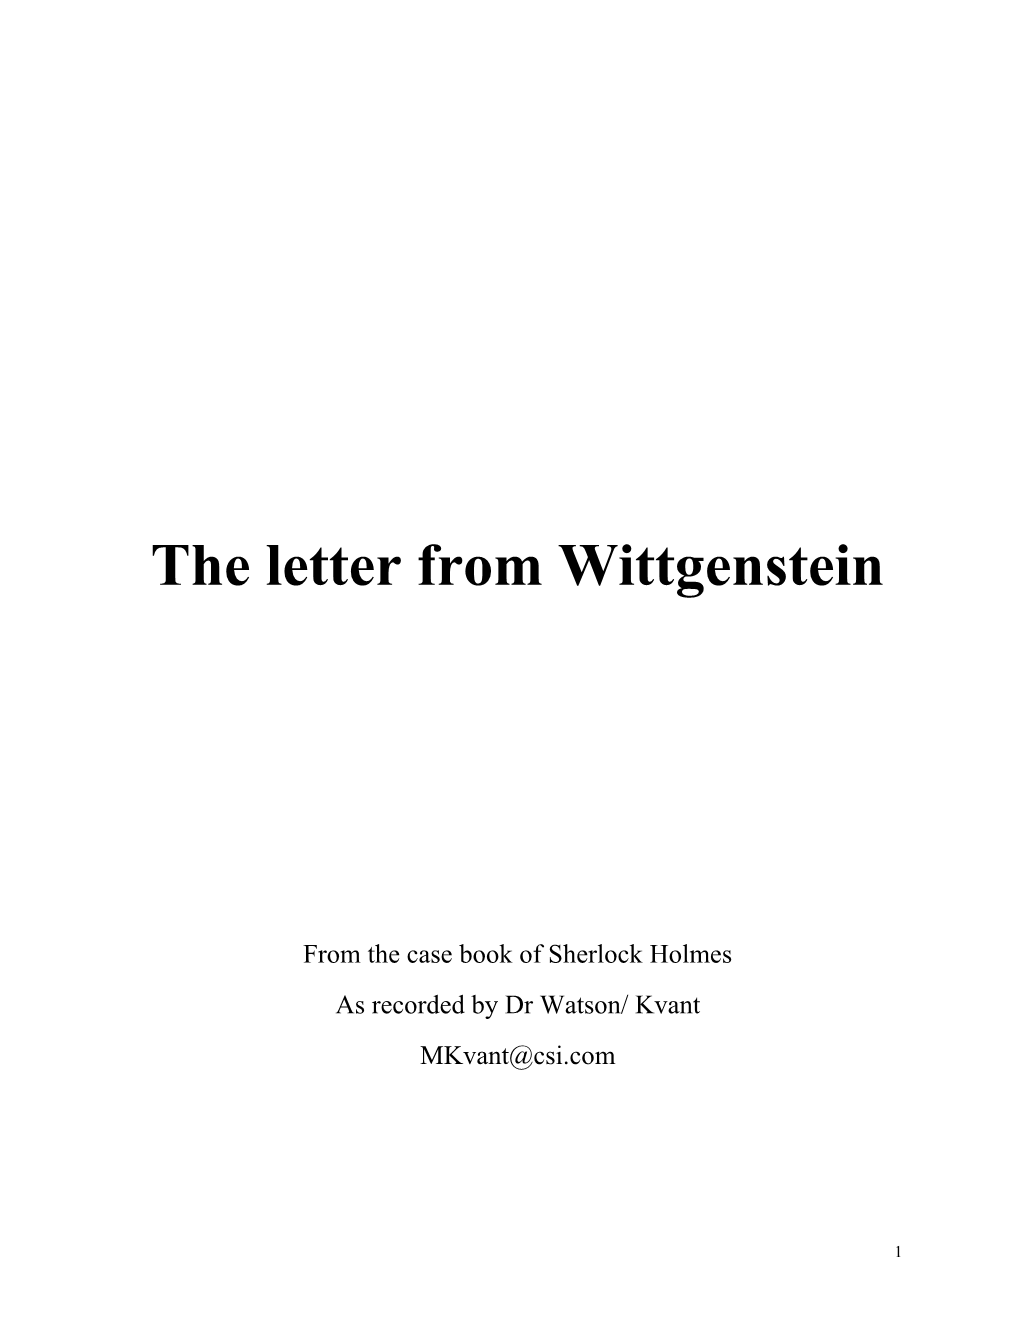 The Letter from Wittgenstein